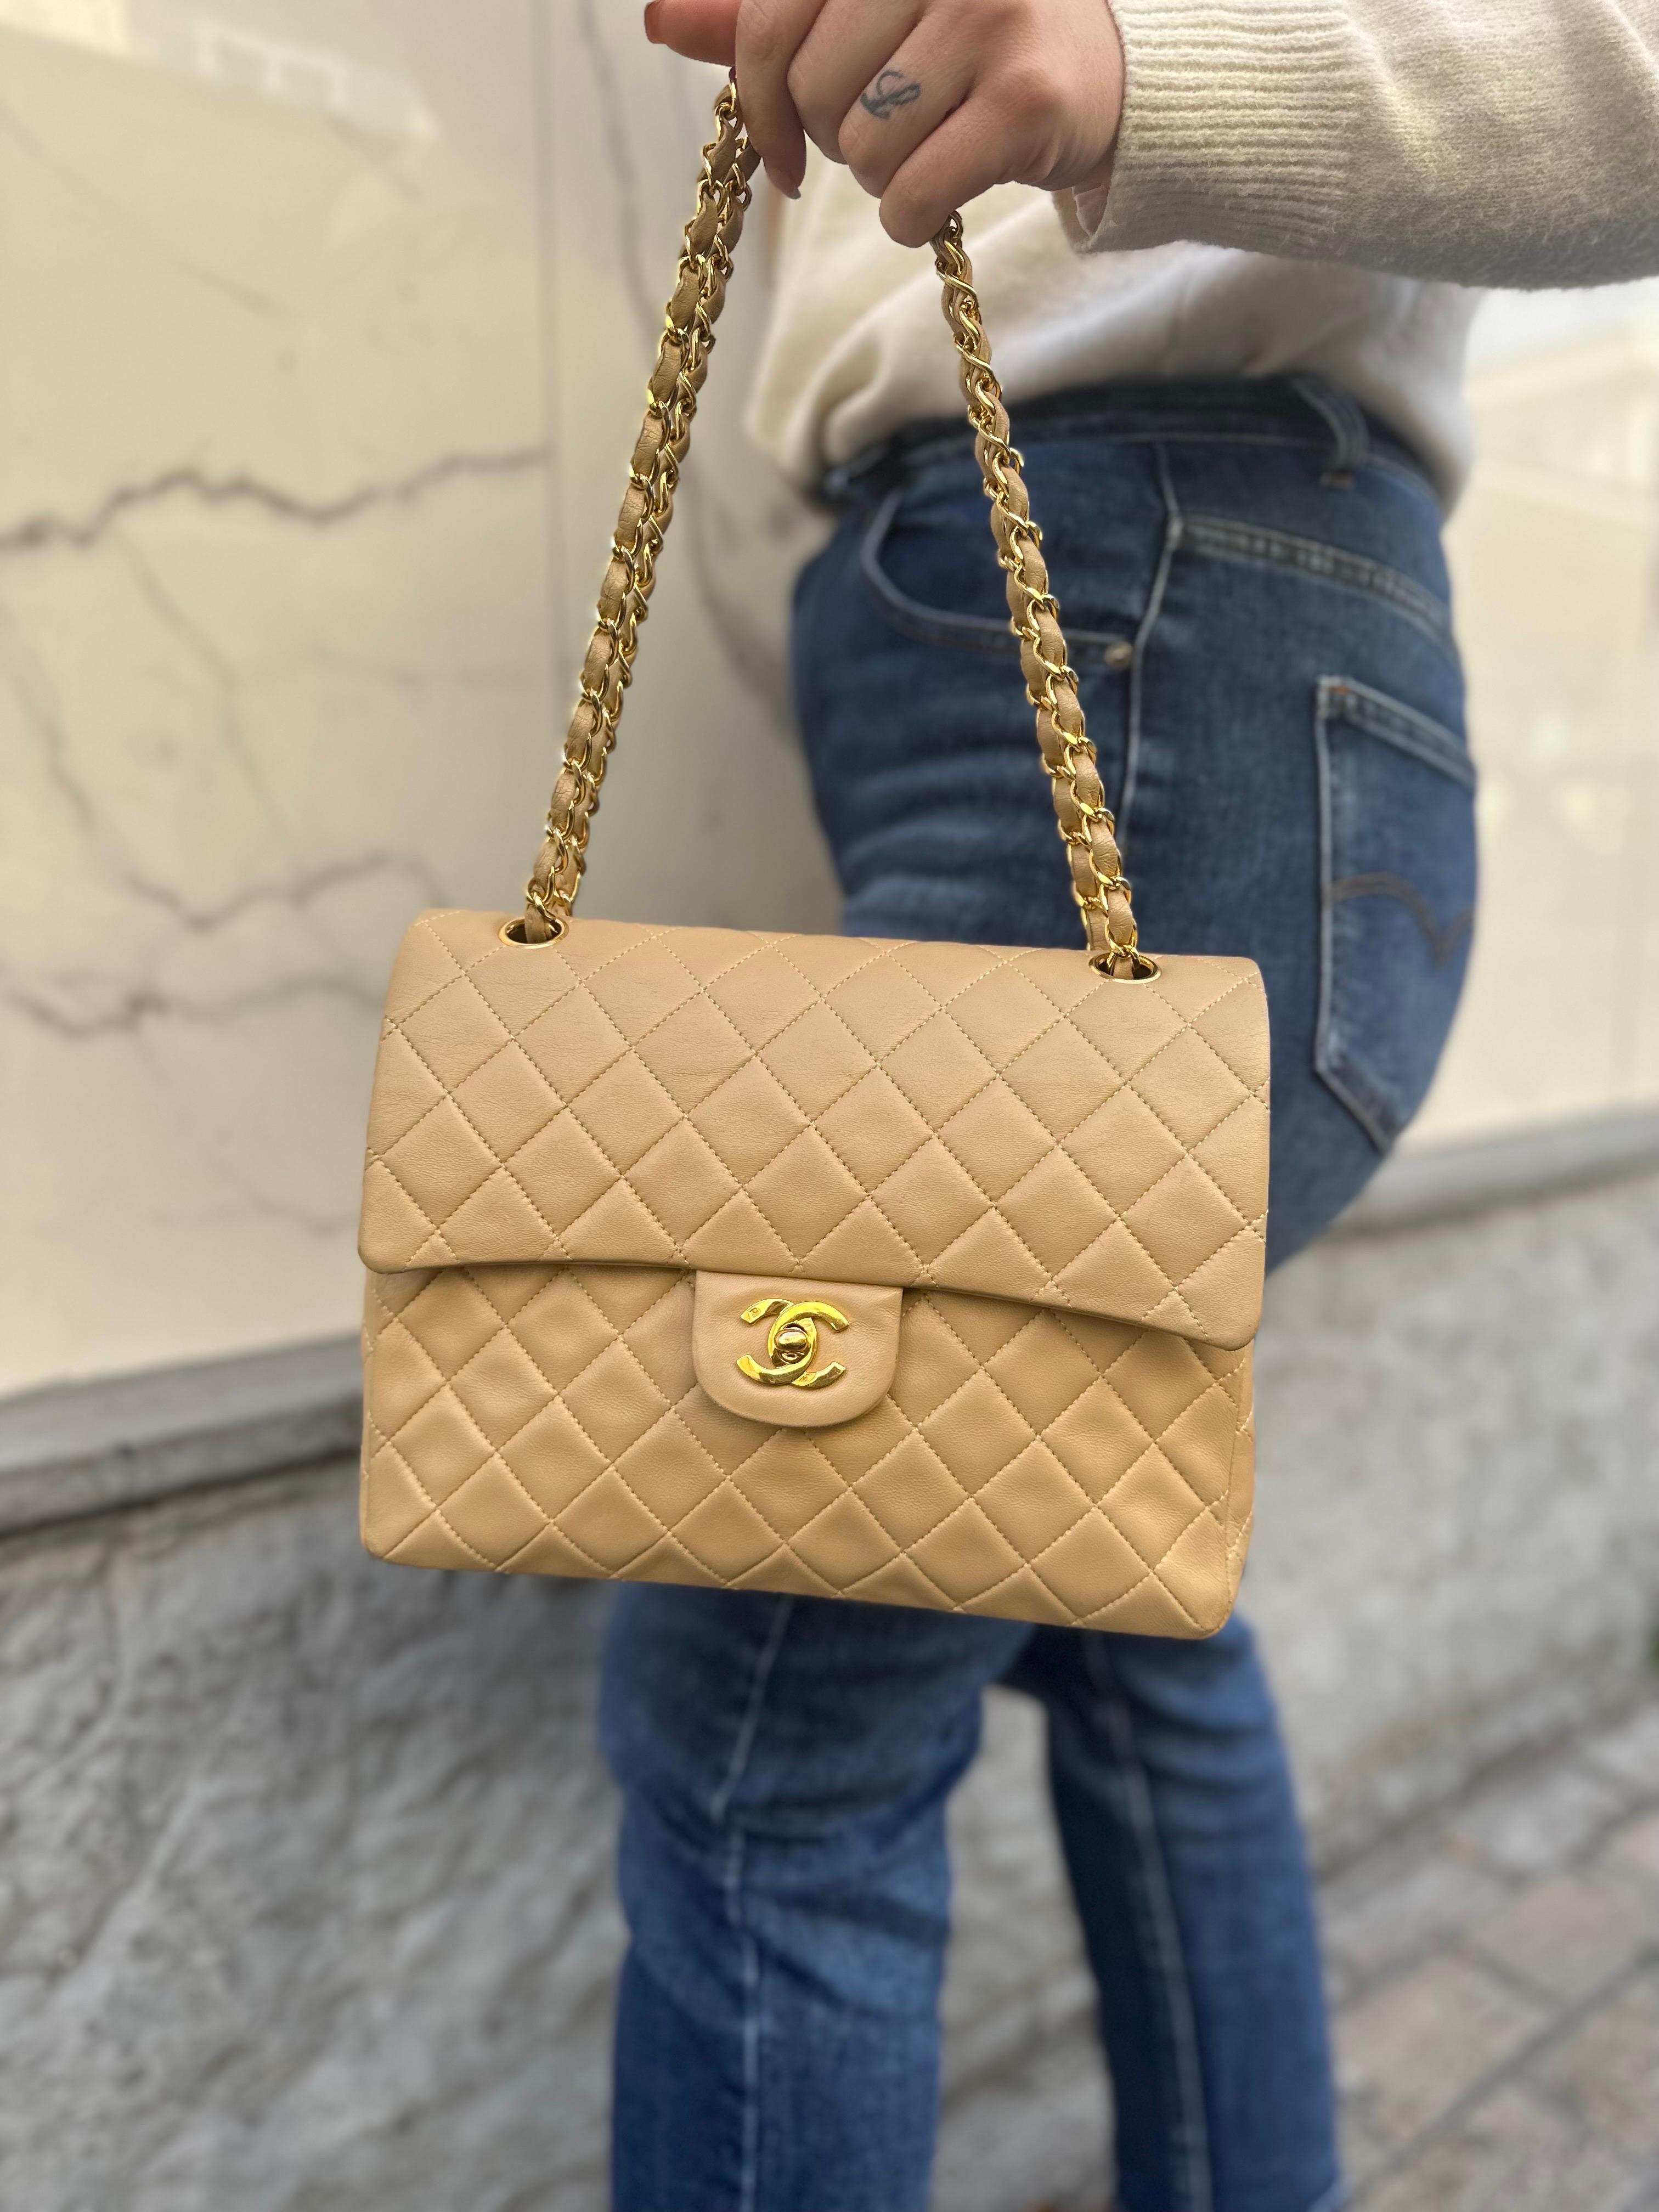 ‘90 Chanel Flap Vintage Beige Leather Shoulder Bag For Sale 14